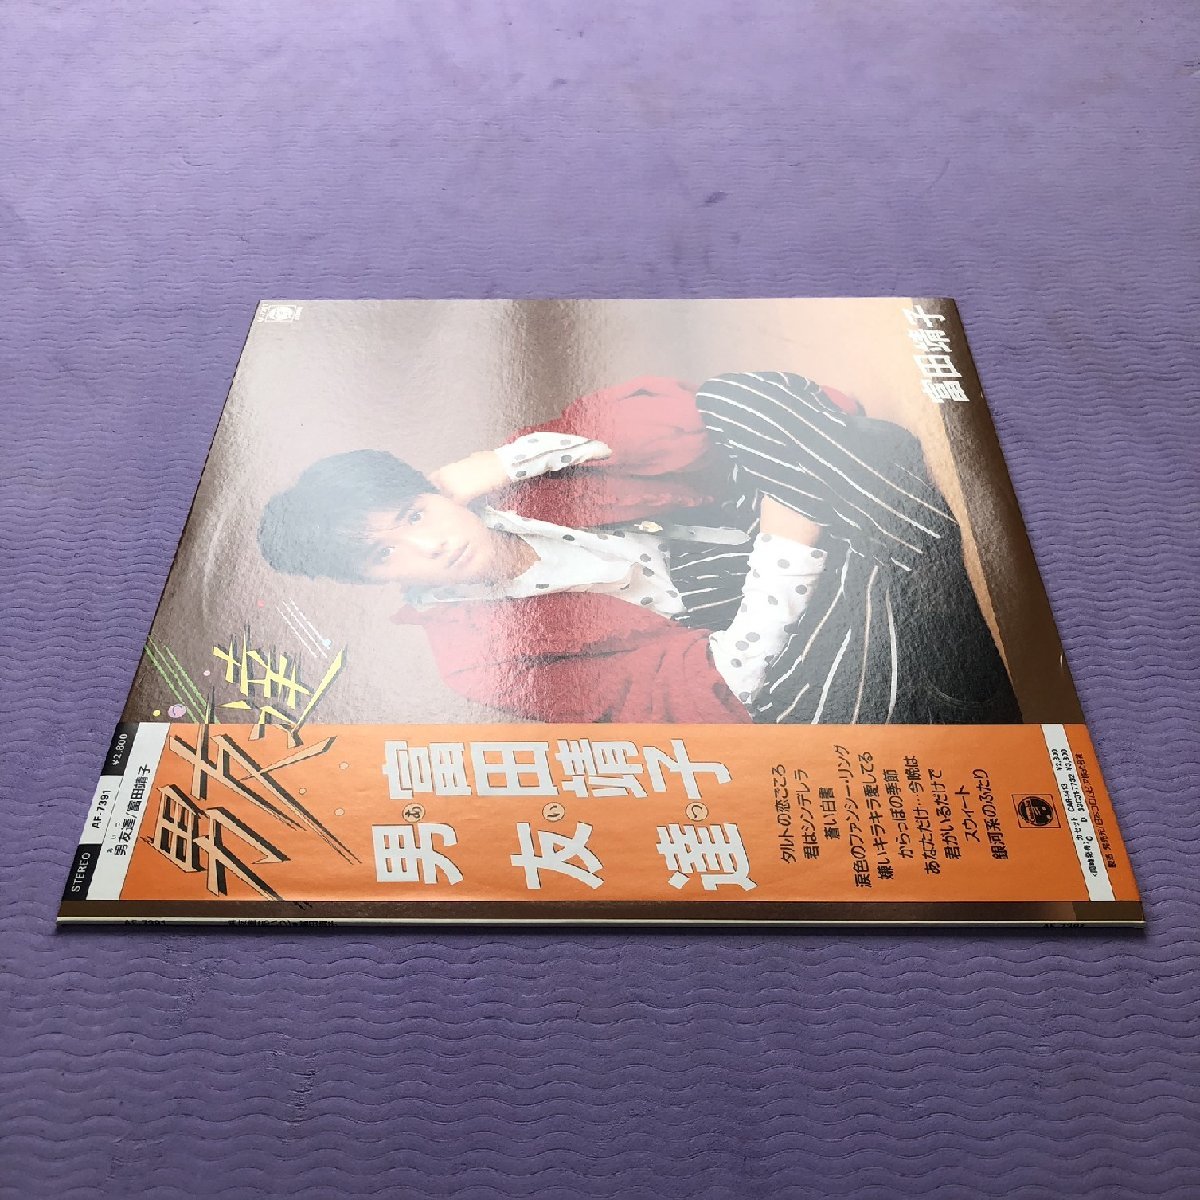  прекрасный запись прекрасный jacket прекрасный товар Tomita Yasuko Yasuko Tomita 1985 год LP запись мужчина .. с лентой J-Poptake кожа yukihite внутри ... Suzuki kissa blow приятный искривление предлагается 